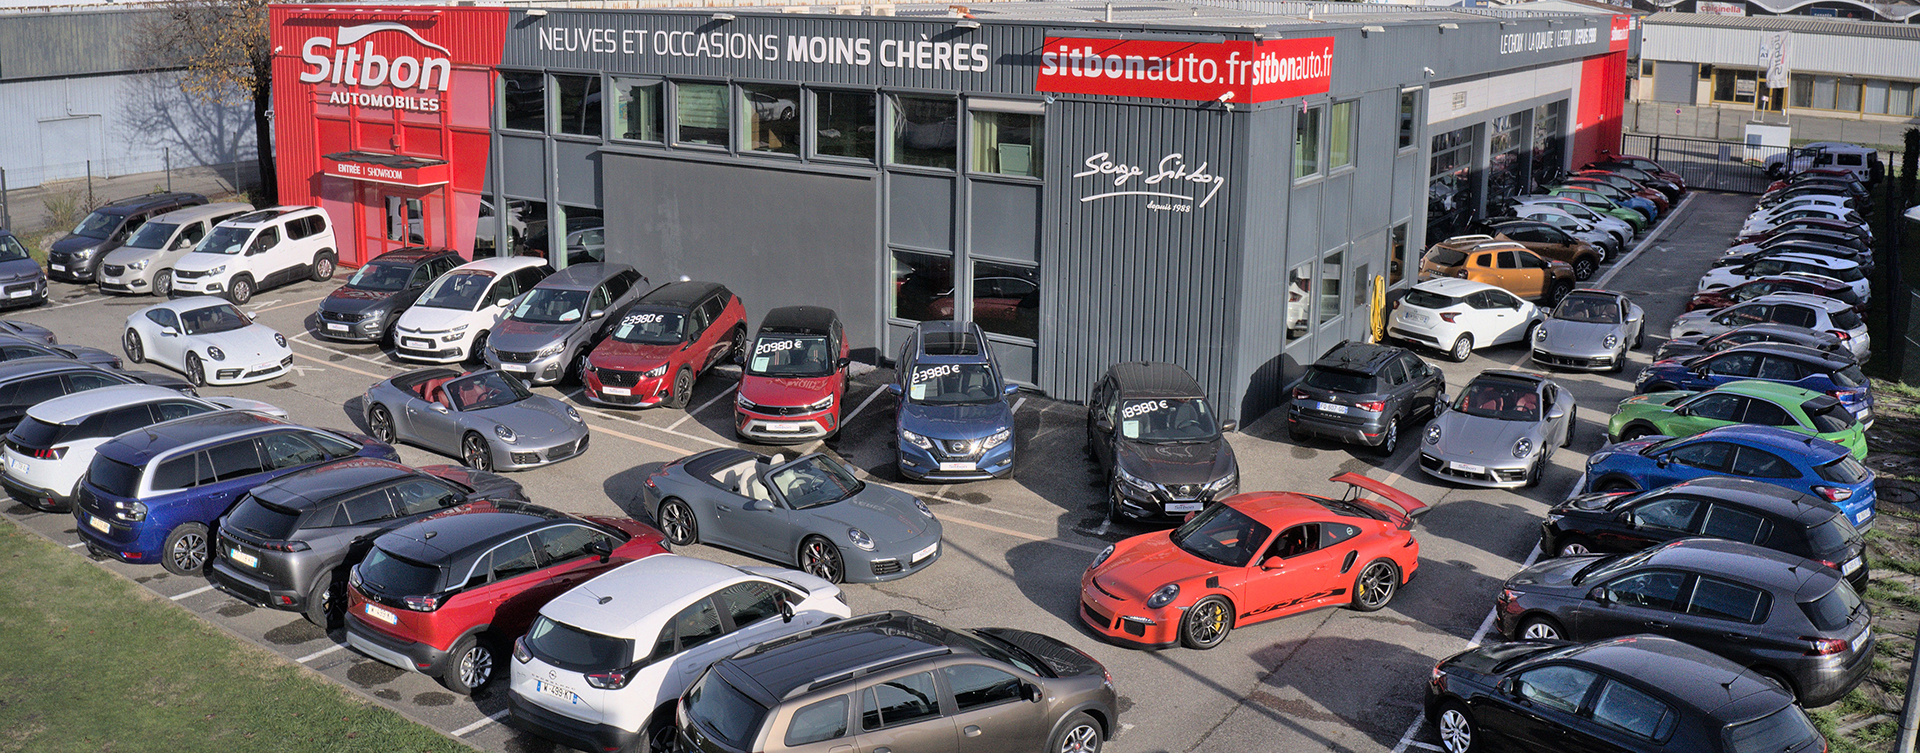 Sitbon Automobiles - Voitures d'occasion moins chères à Grenoble